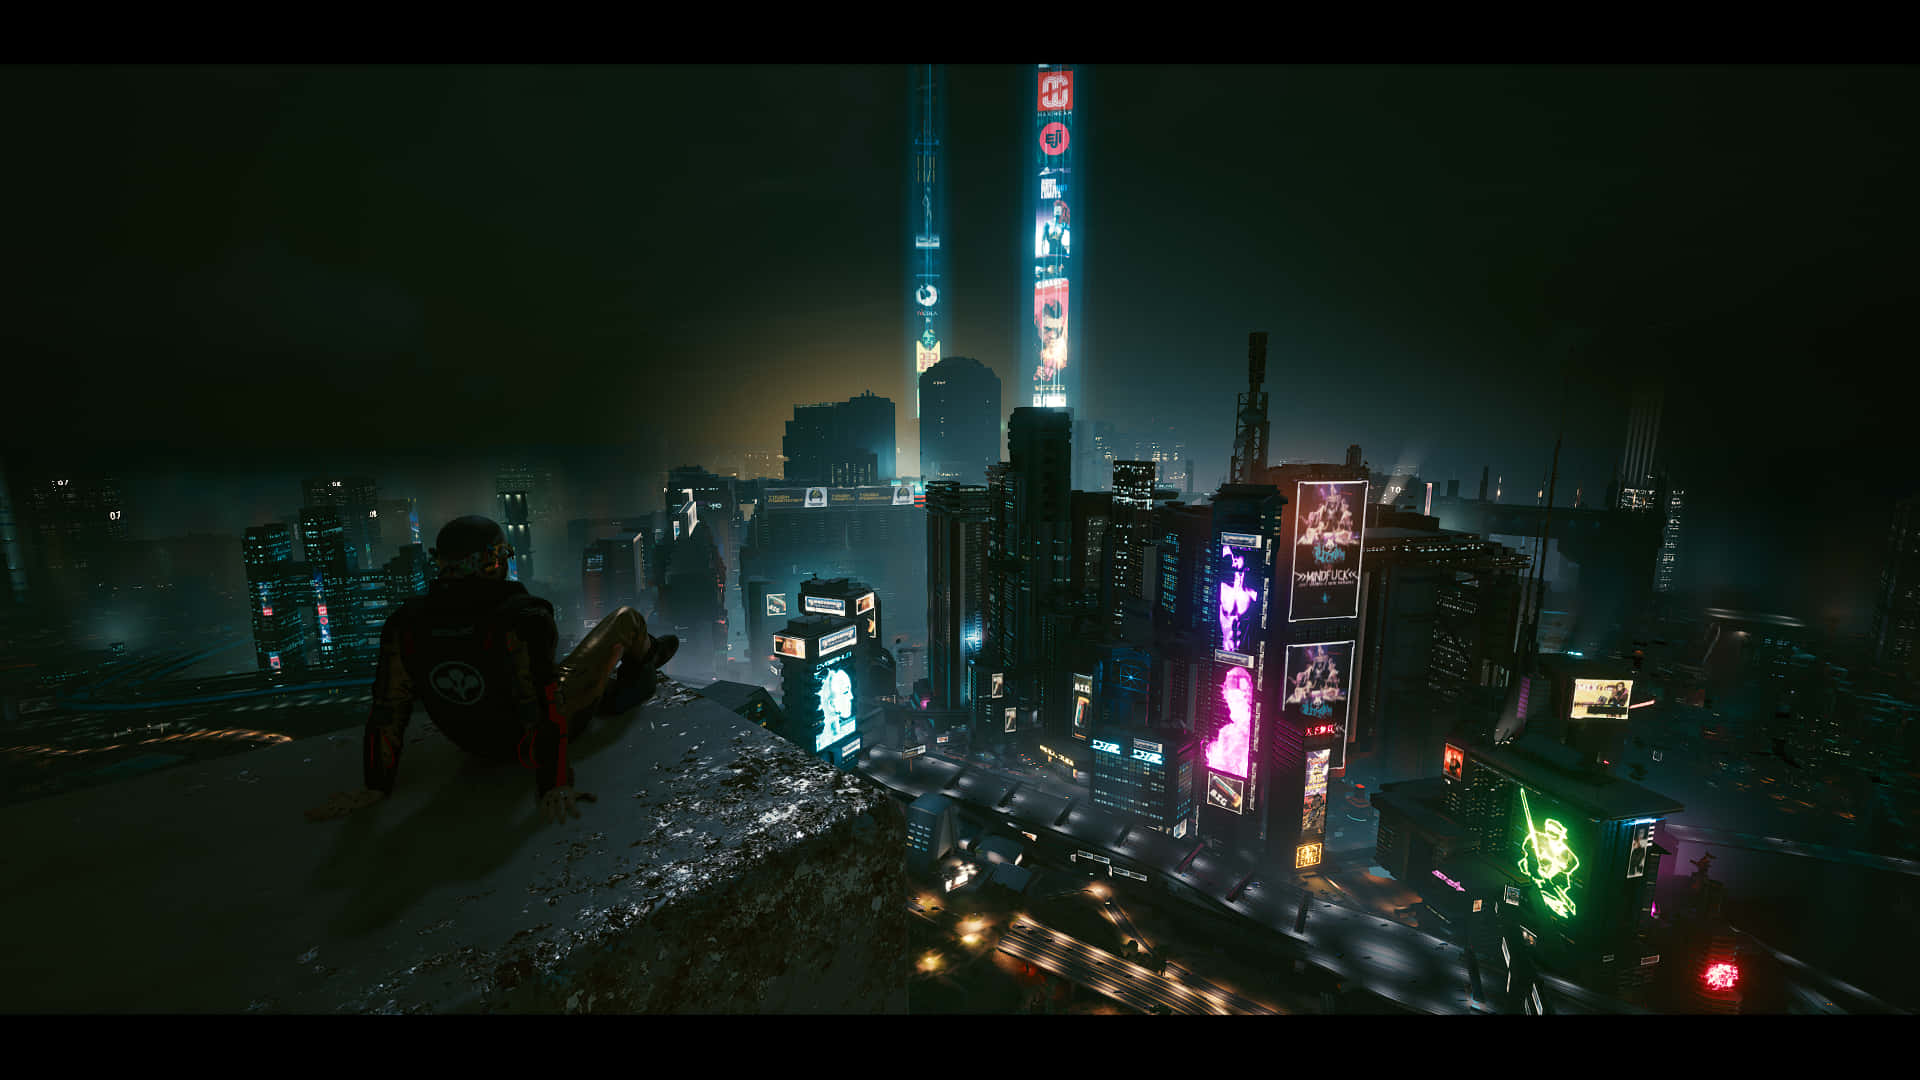 Unpaisaje Urbano Cyberpunk Inspirador Brilla En La Noche. Fondo de pantalla